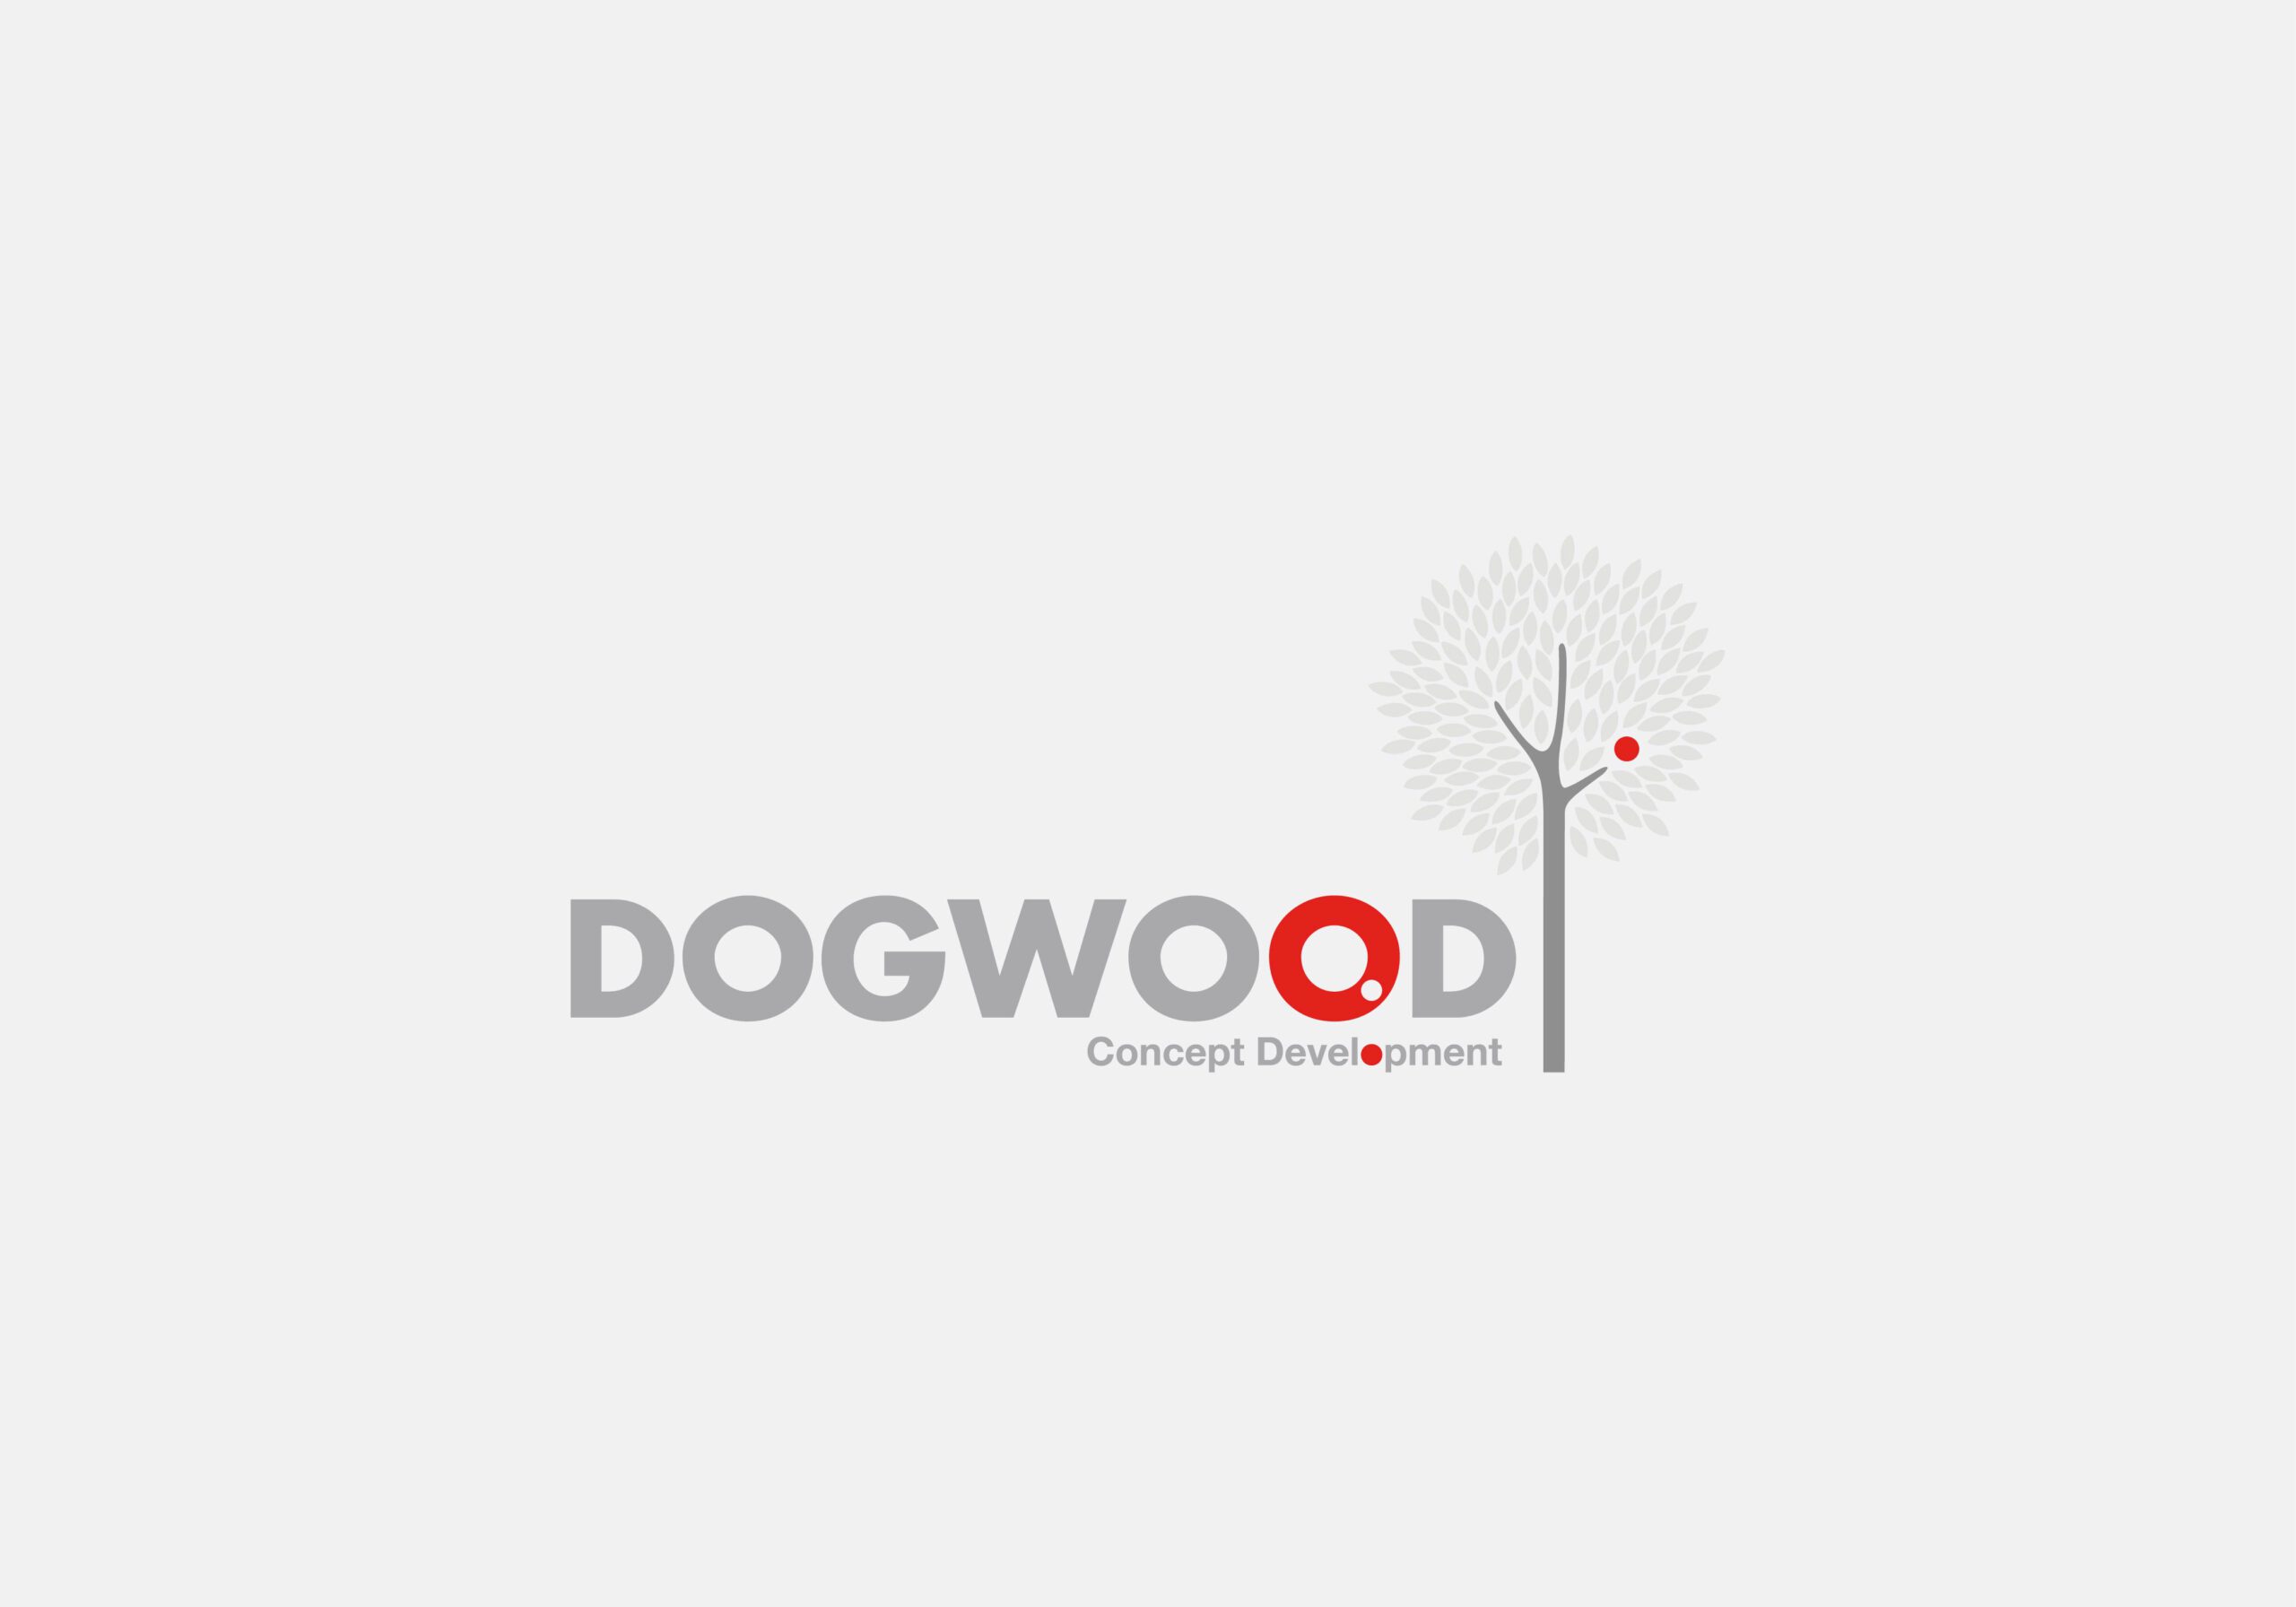 DOGWOOD-WEB_DOGWOOD-LOGO-2002